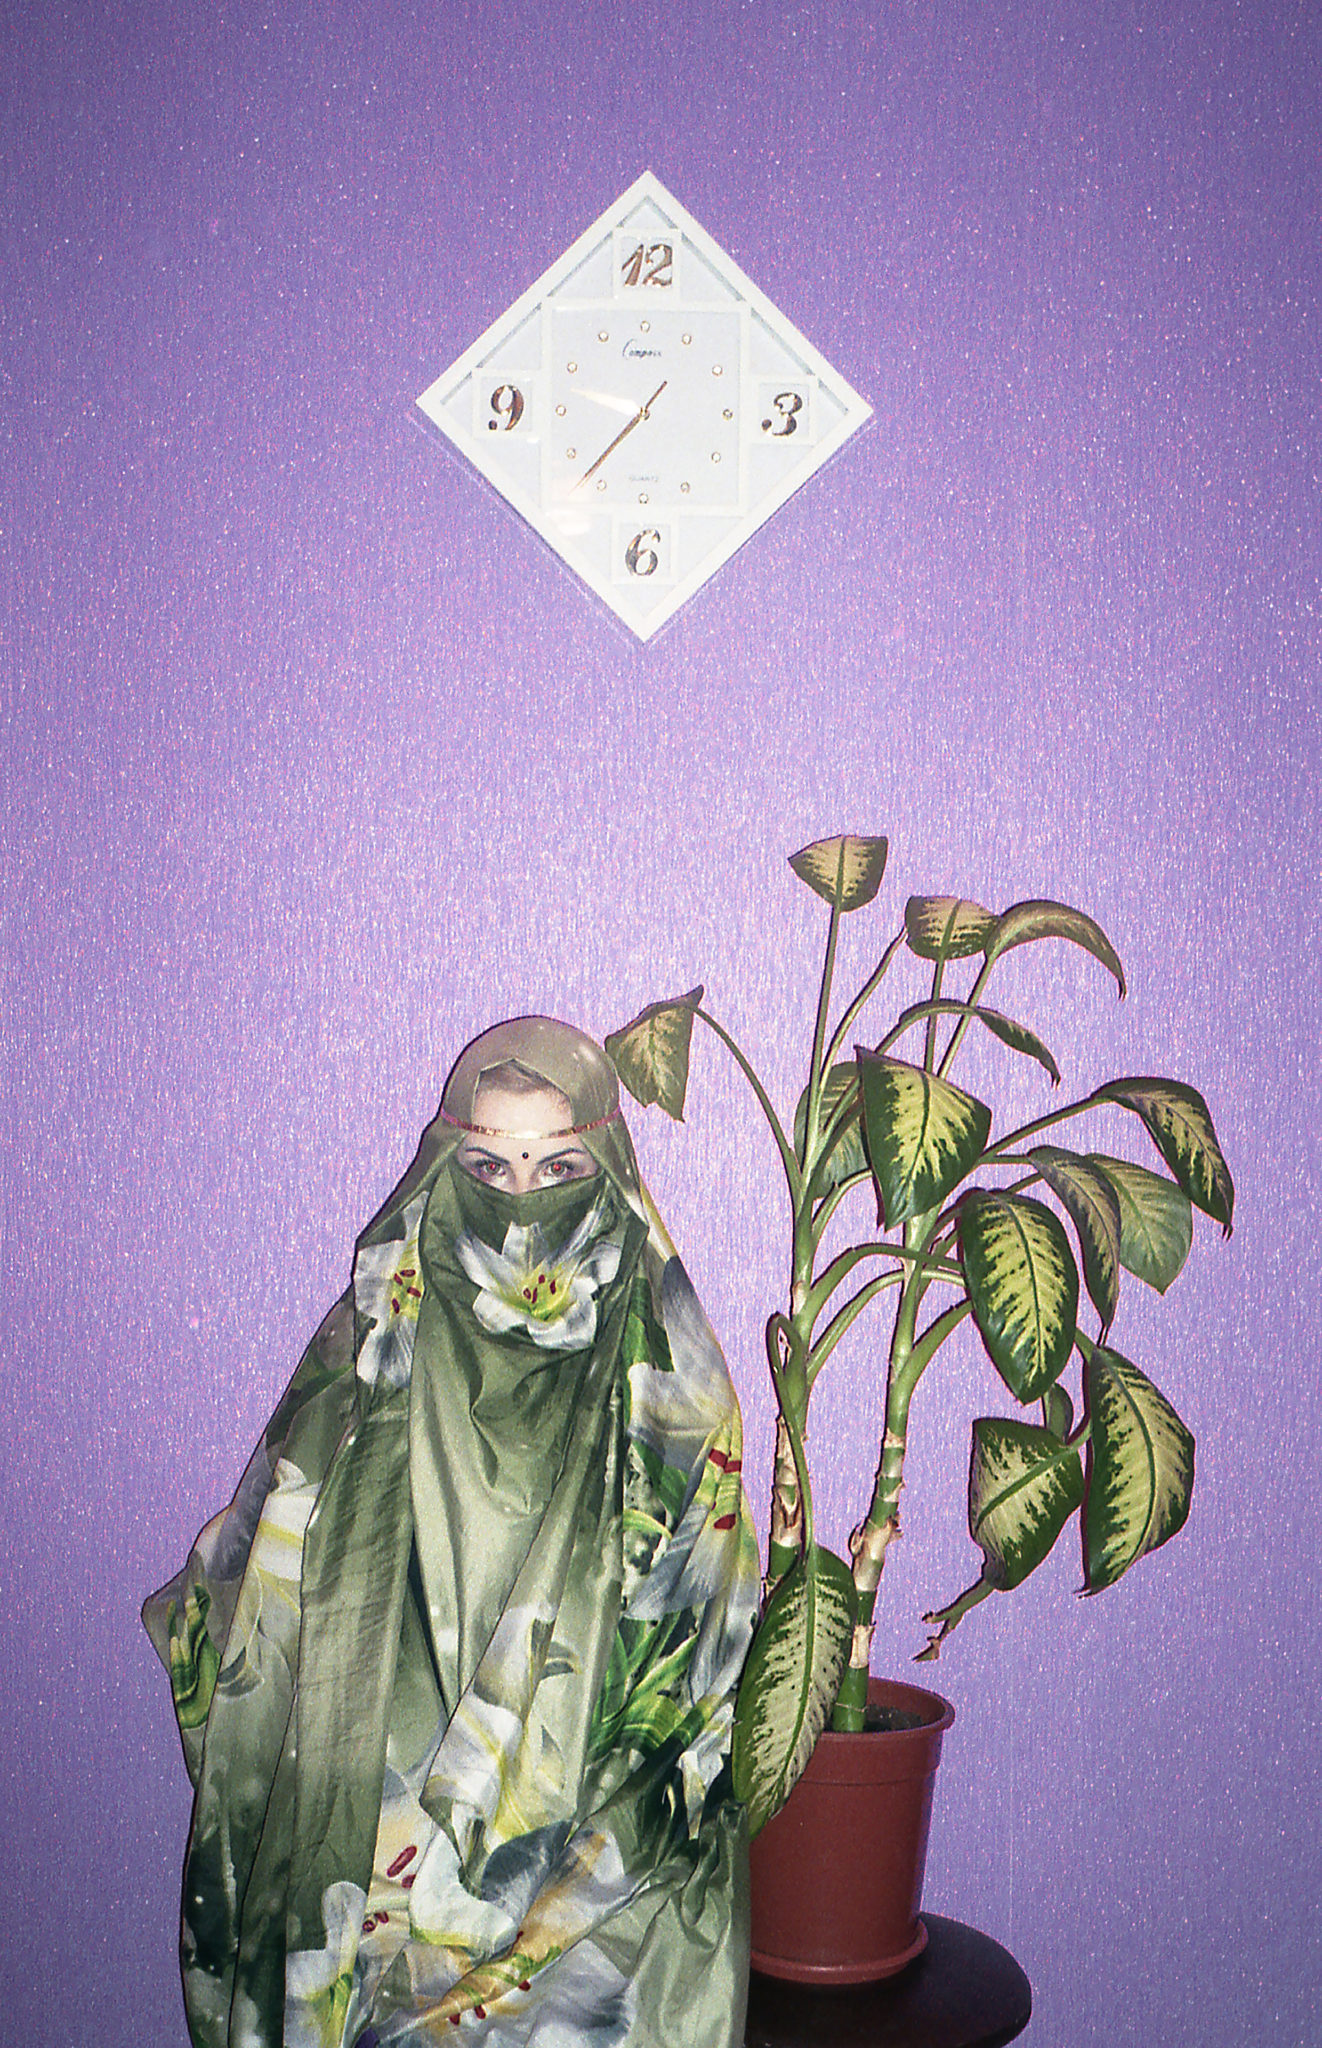 Młoda kobieta stoi ubrana w burce z kwiatami. Przy niej stoi roślina w doniczce, a nad nią znajduję się zegar w kształcie kwadratu.